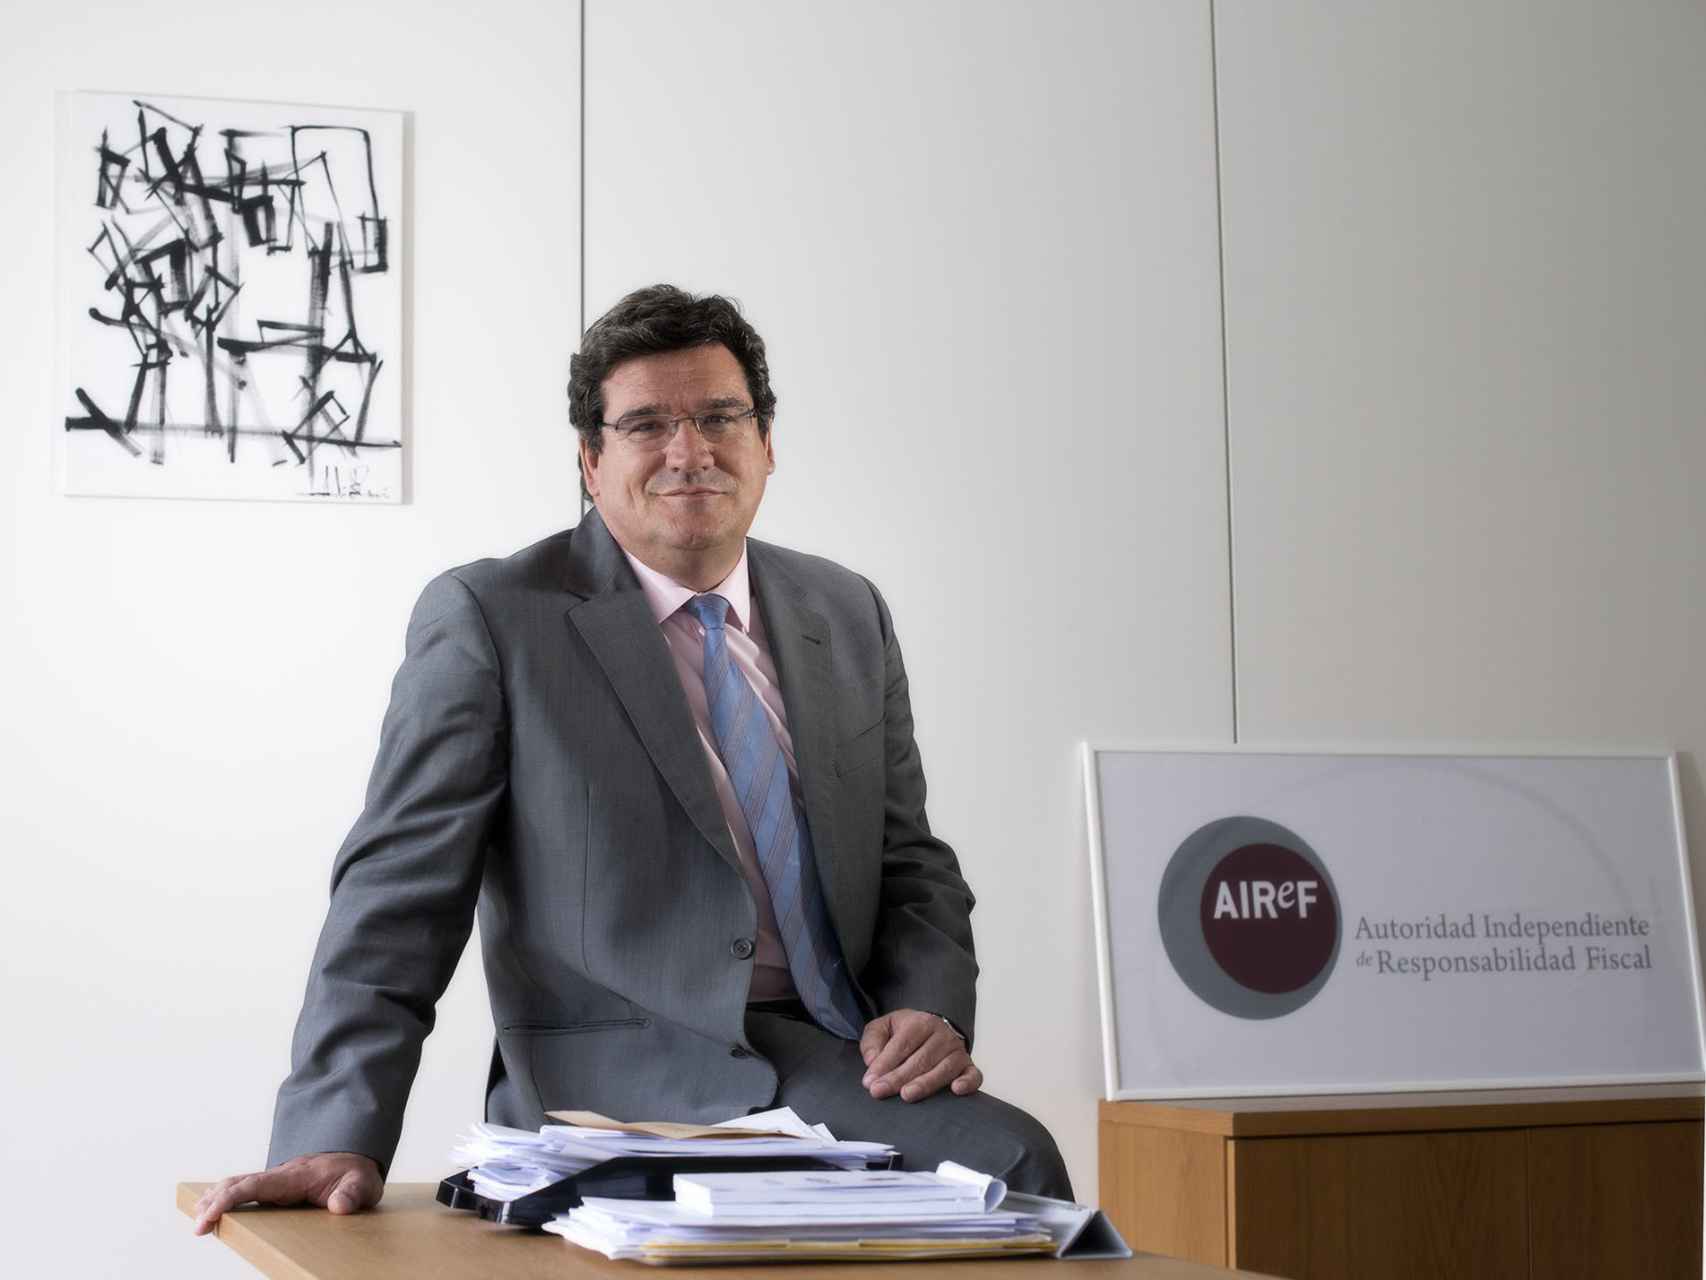 José Luis Escrivá Belmonte, presidente de la Autoridad Independiente de Responsabilidad Fiscal